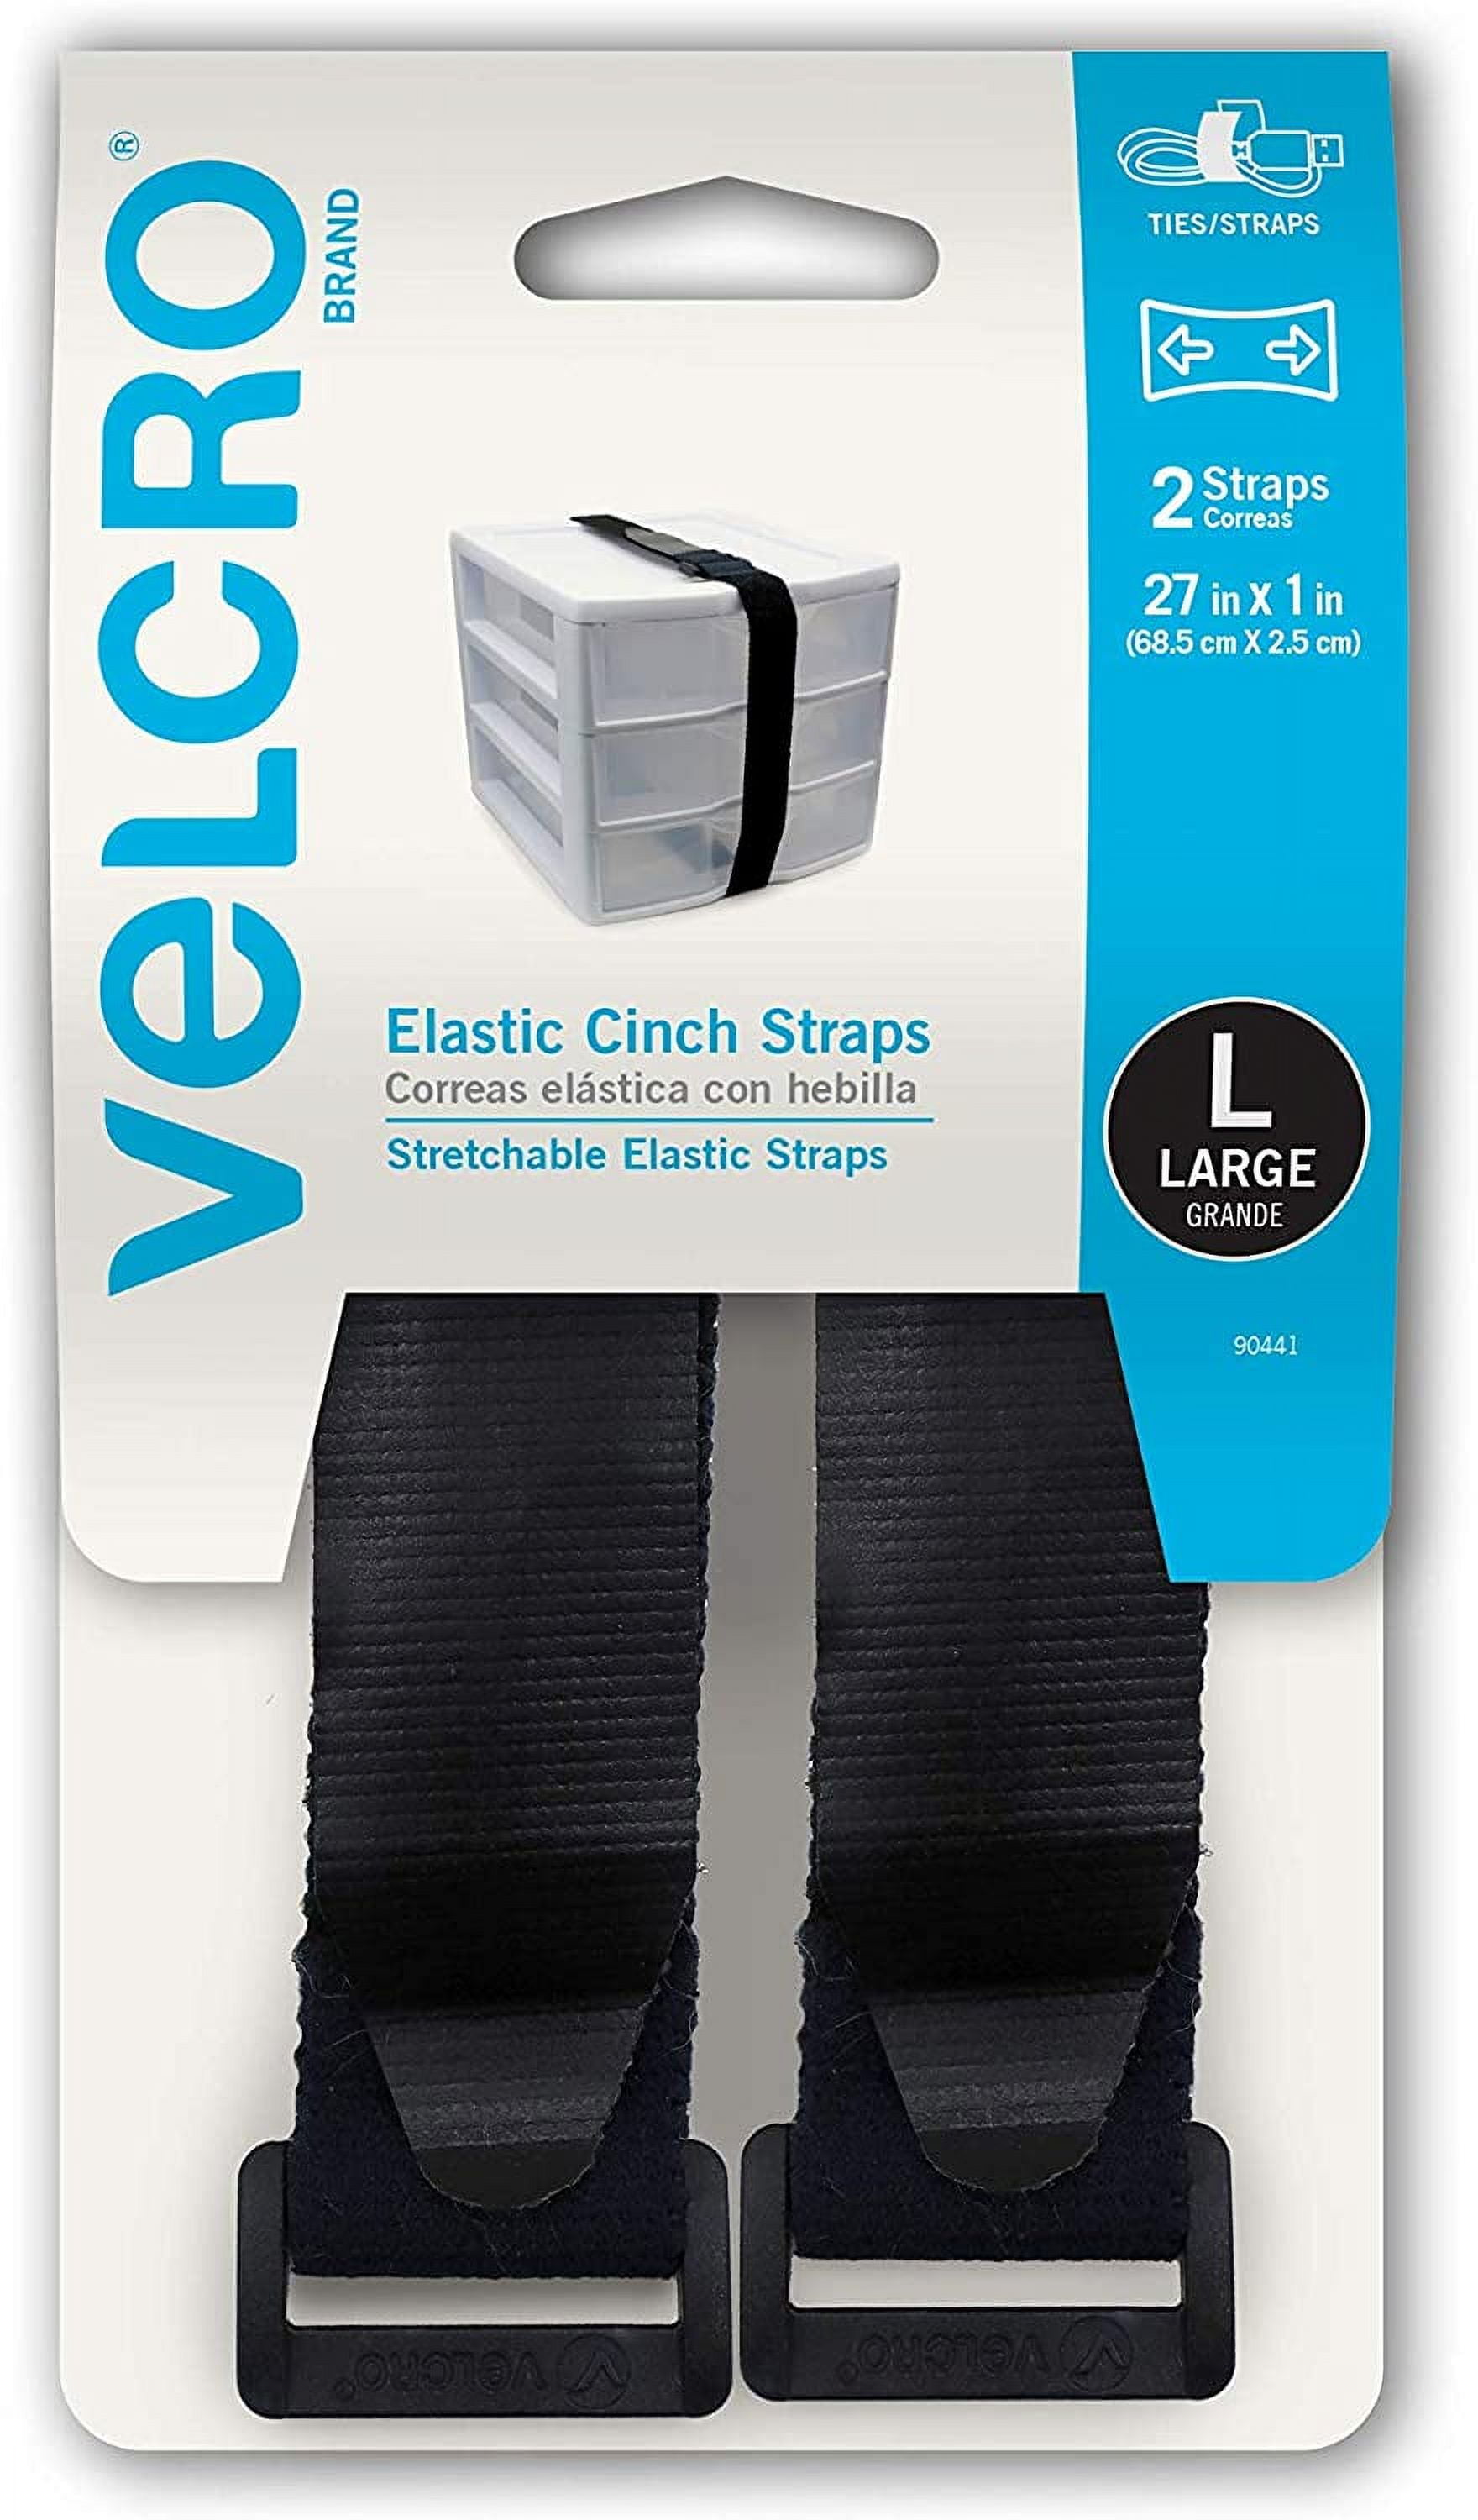 VELCRO Brand All Purpose Cinch Strap 27x1 Black 2 Ct 